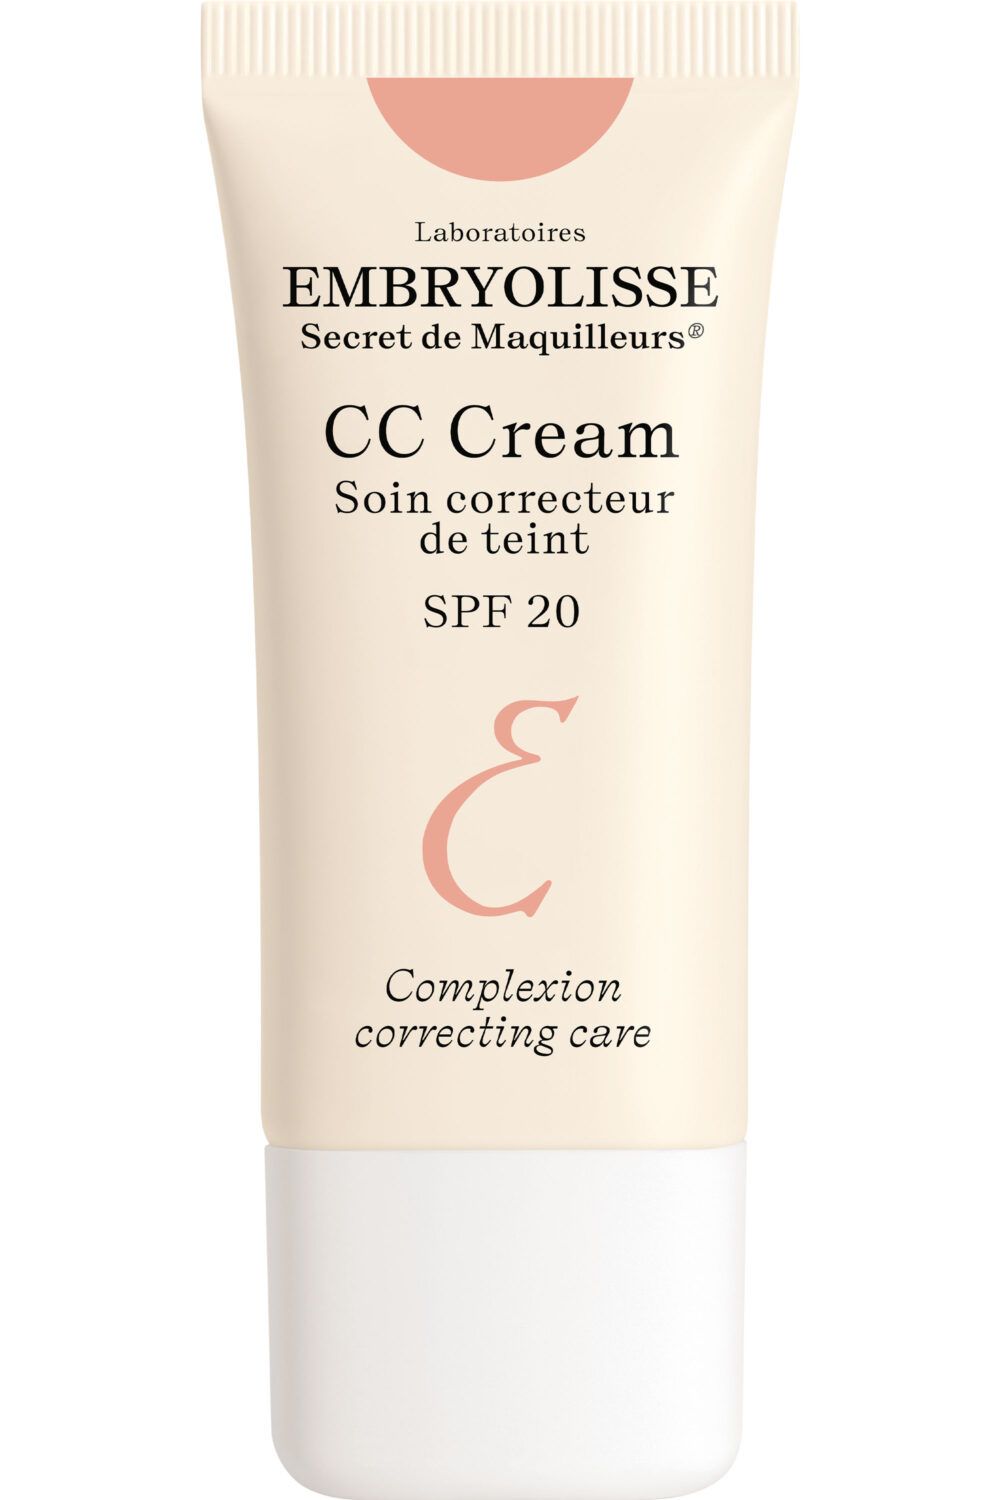 Embryolisse - Soin correcteur de teint CC crème